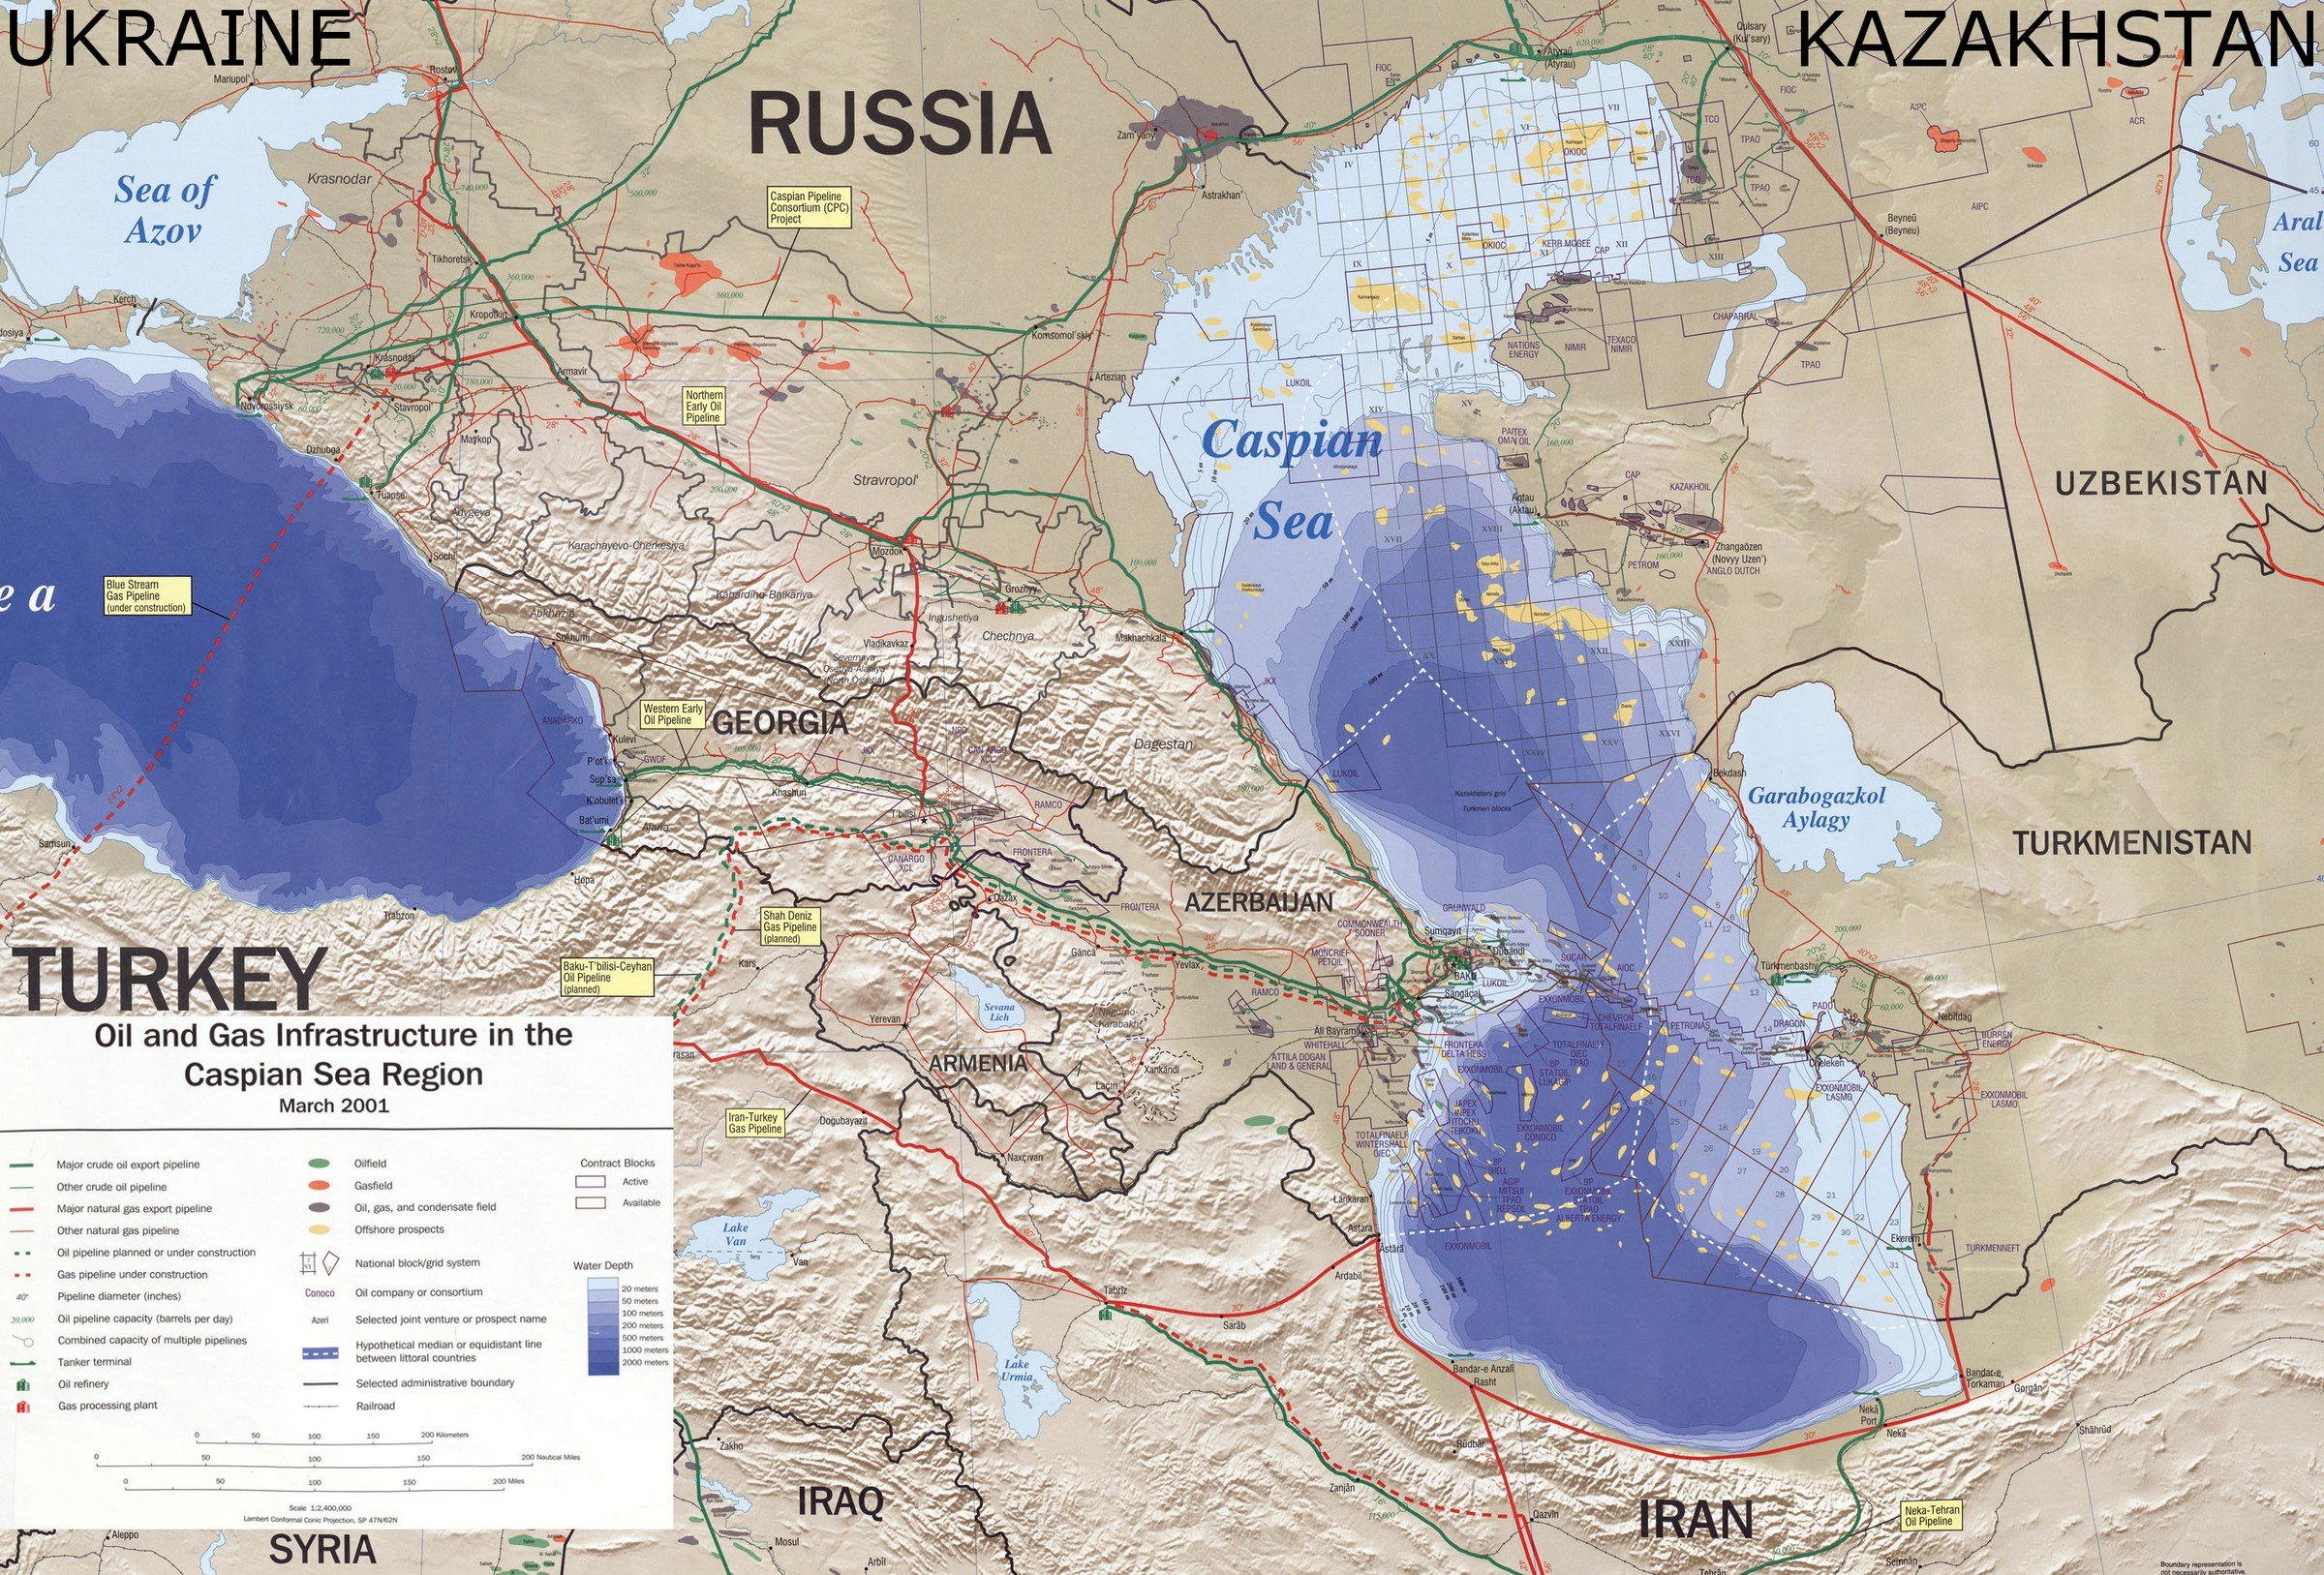 Карта каспий казахстан